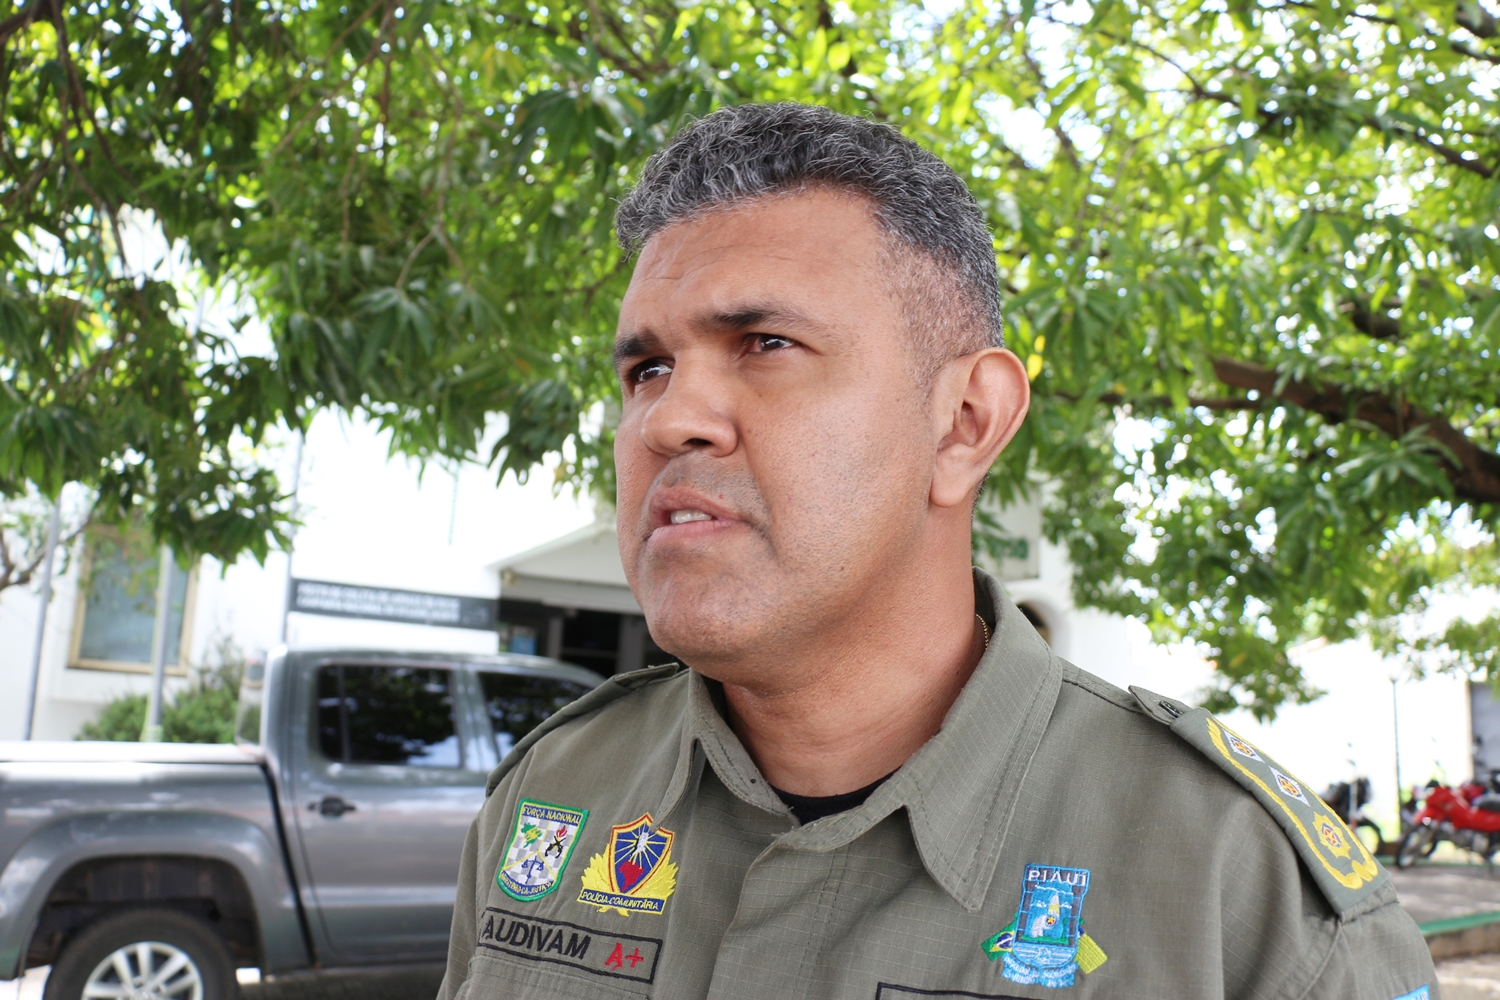 Major Audivam Nunes, comandante da Força Tarefa da Segurança Pública